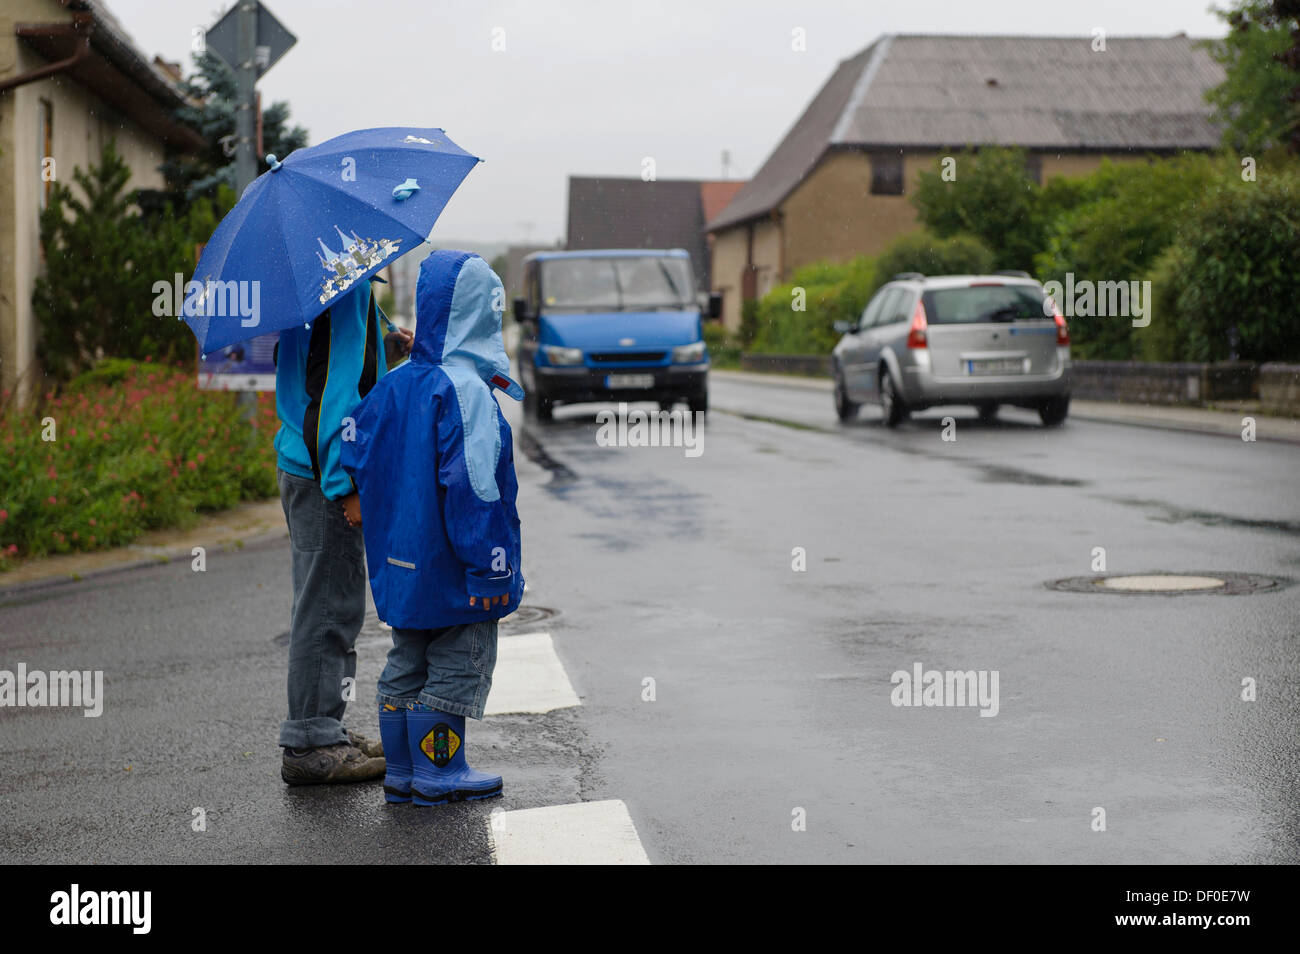 Deux enfants, 4 et 8 ans, en attendant de traverser la rue sous la pluie, deux voitures, Assamstadt, Bade-Wurtemberg Banque D'Images